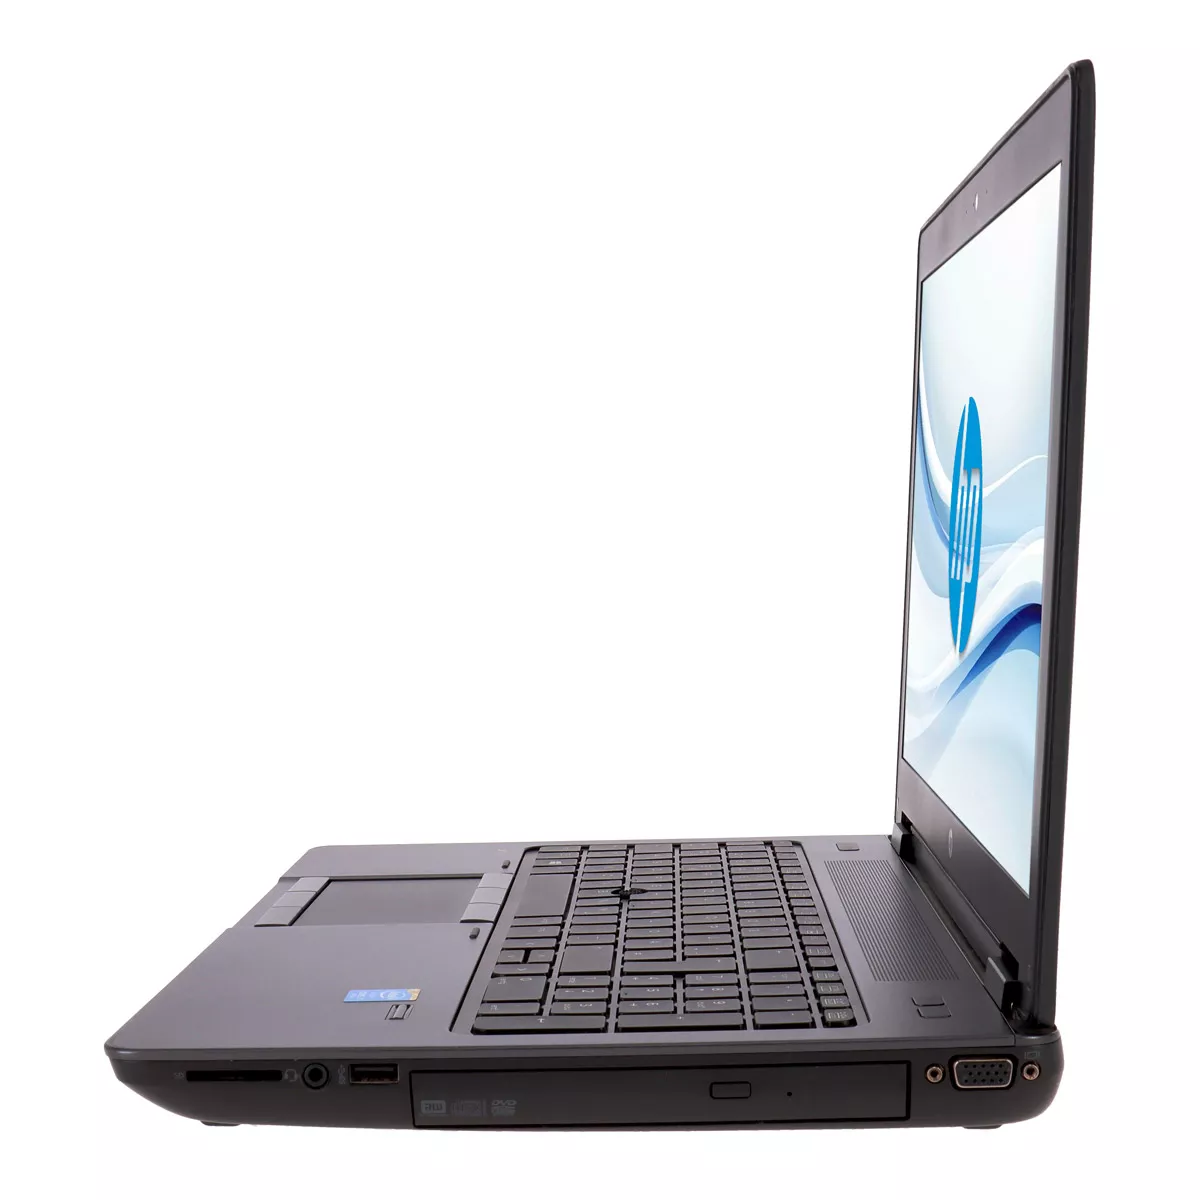 HP ZBook 15 Core i7 4600M nVidia Quadro K610M Full-HD Webcam A+